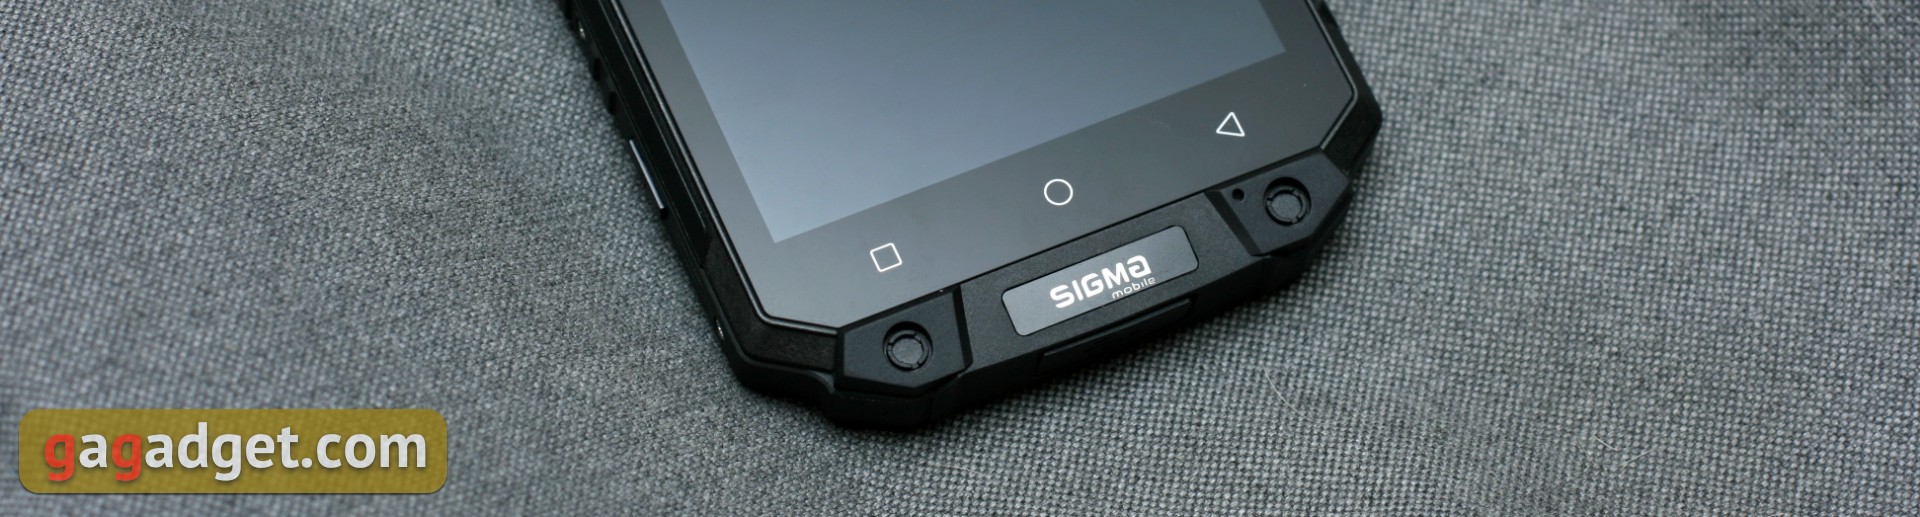 Огляд Sigma Mobile X-treme PQ39 MAX: сучасний захищений батарейкофон-12